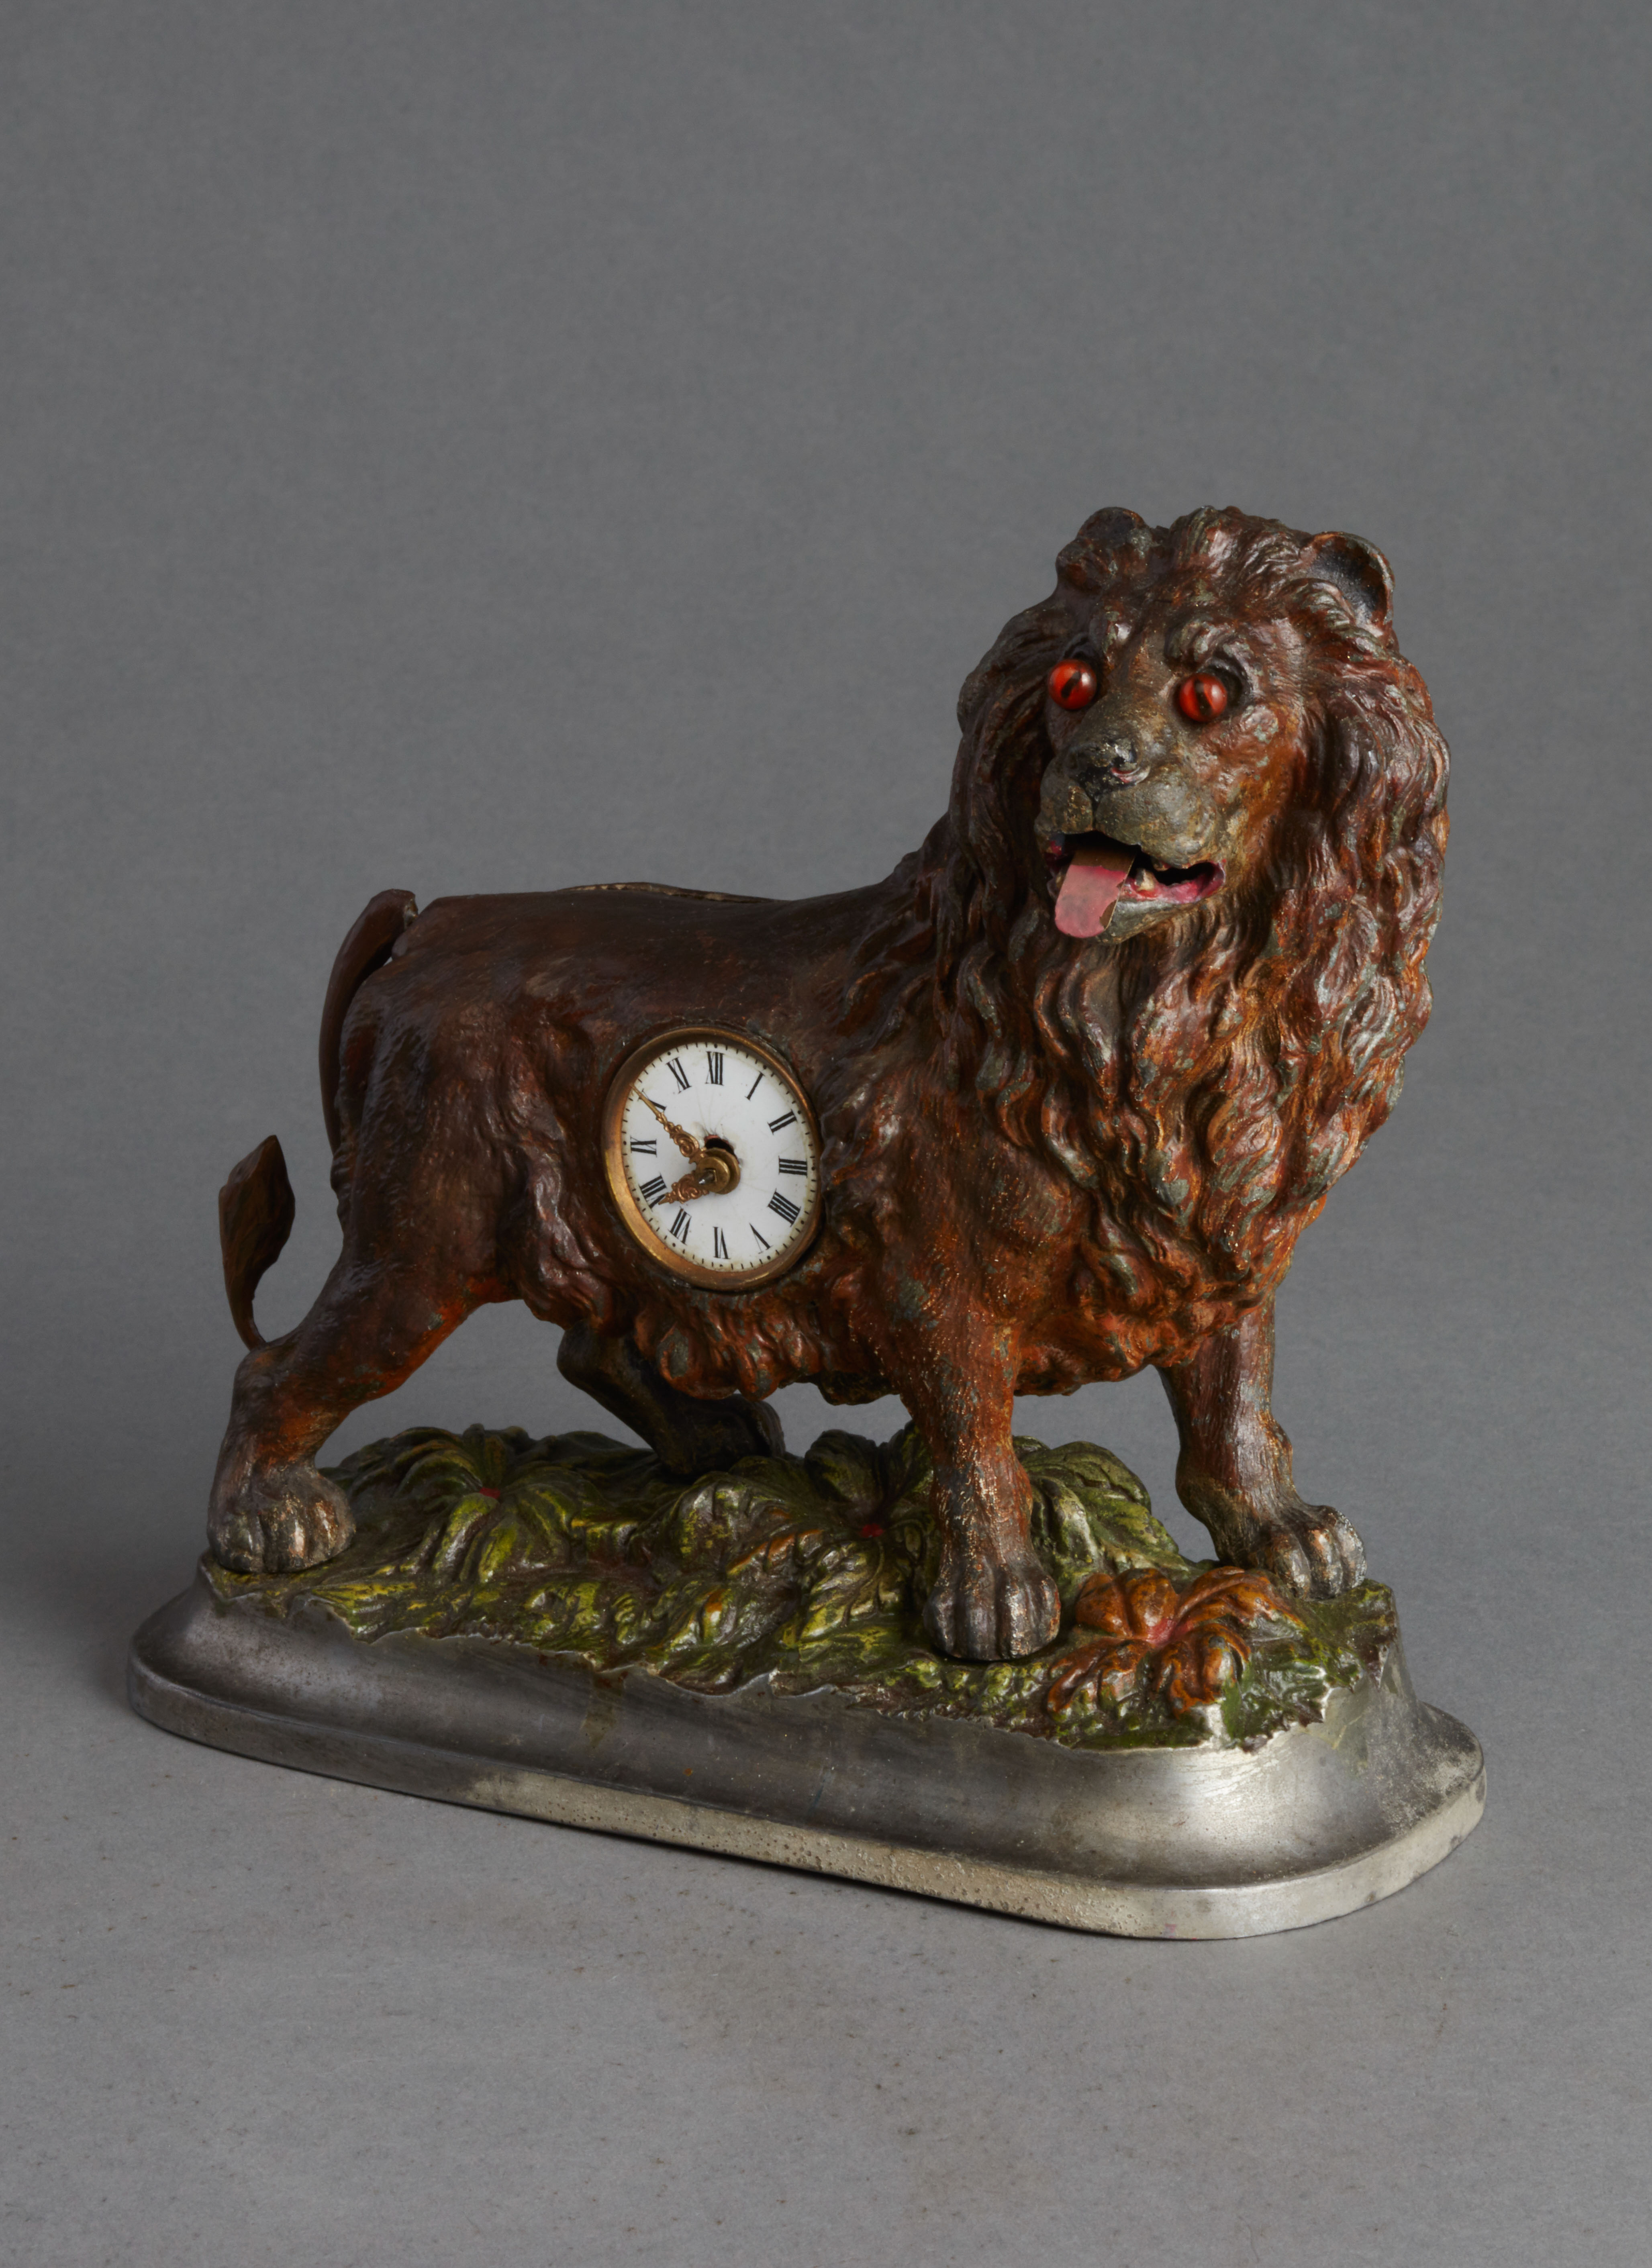 Small animated lion desk clock, circa 1880.